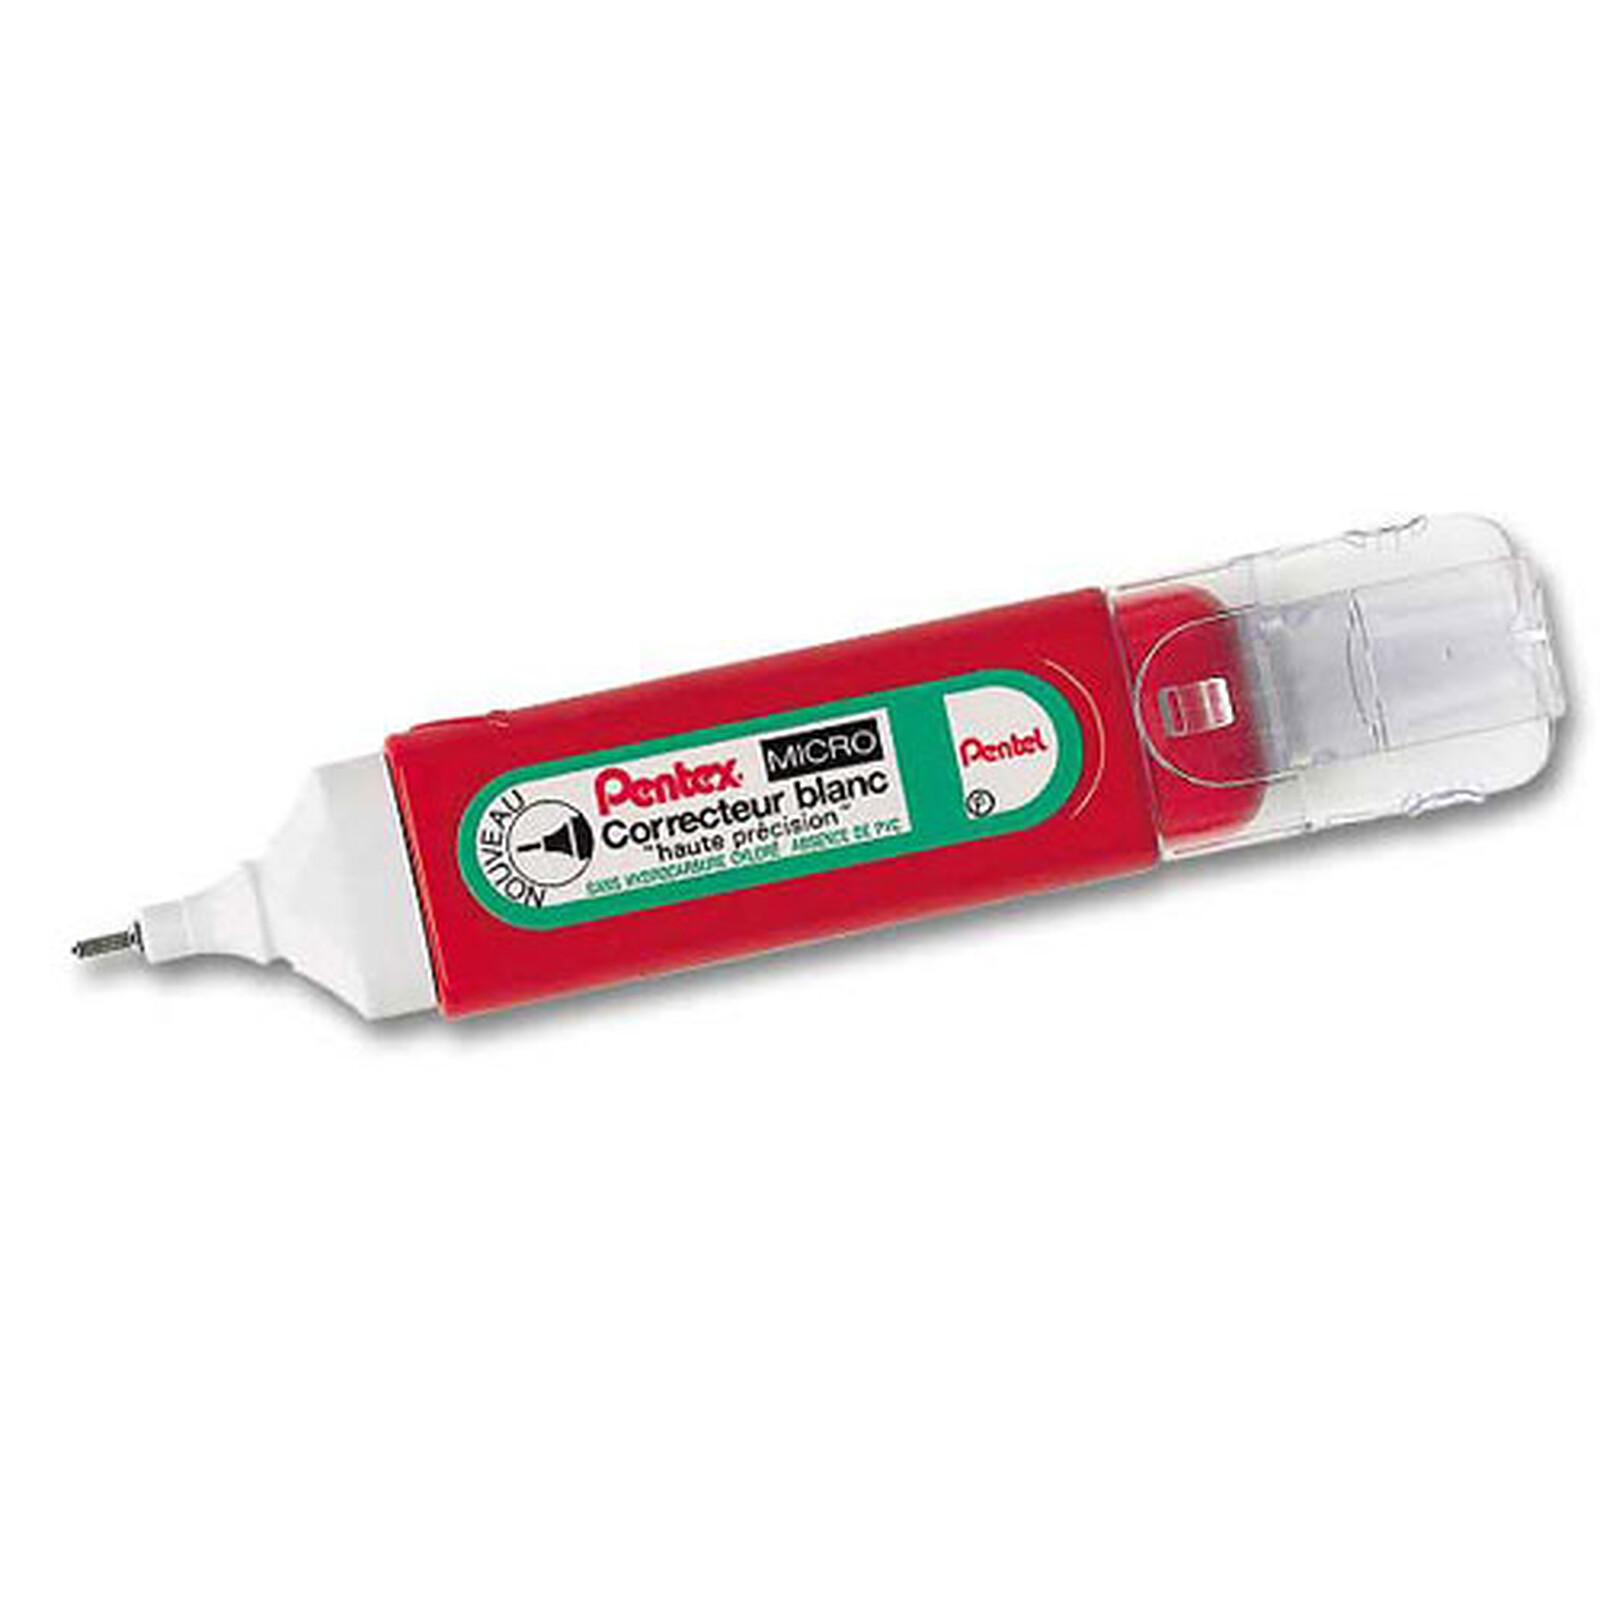 PENTEL Correcteur Pentex flacon pointe micro - Correcteur - LDLC